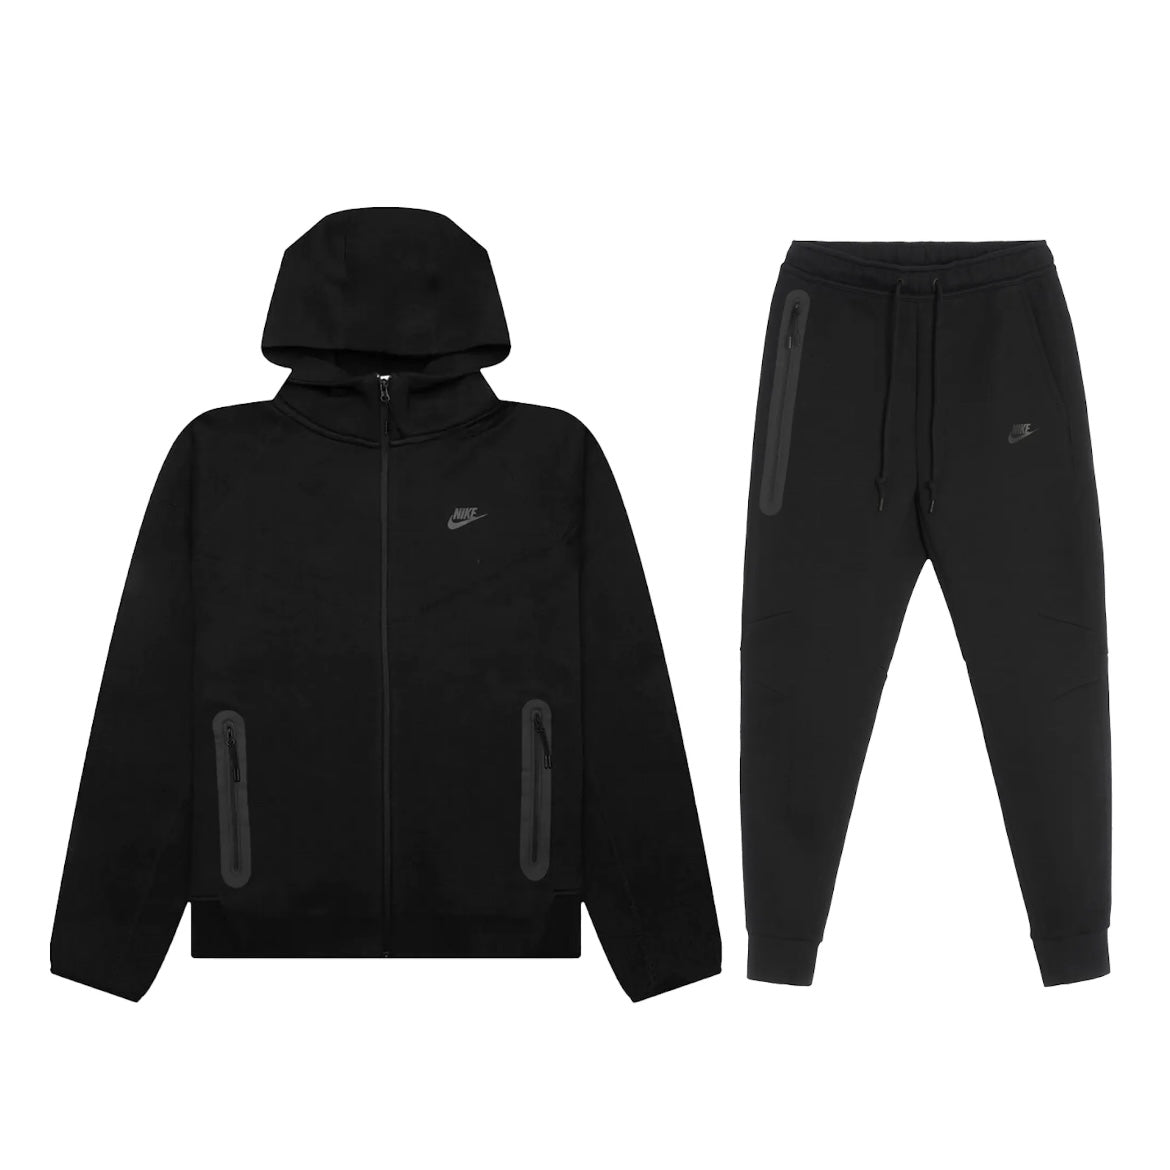 Nike Sportswear Tech Fleece Hoodie White/Black